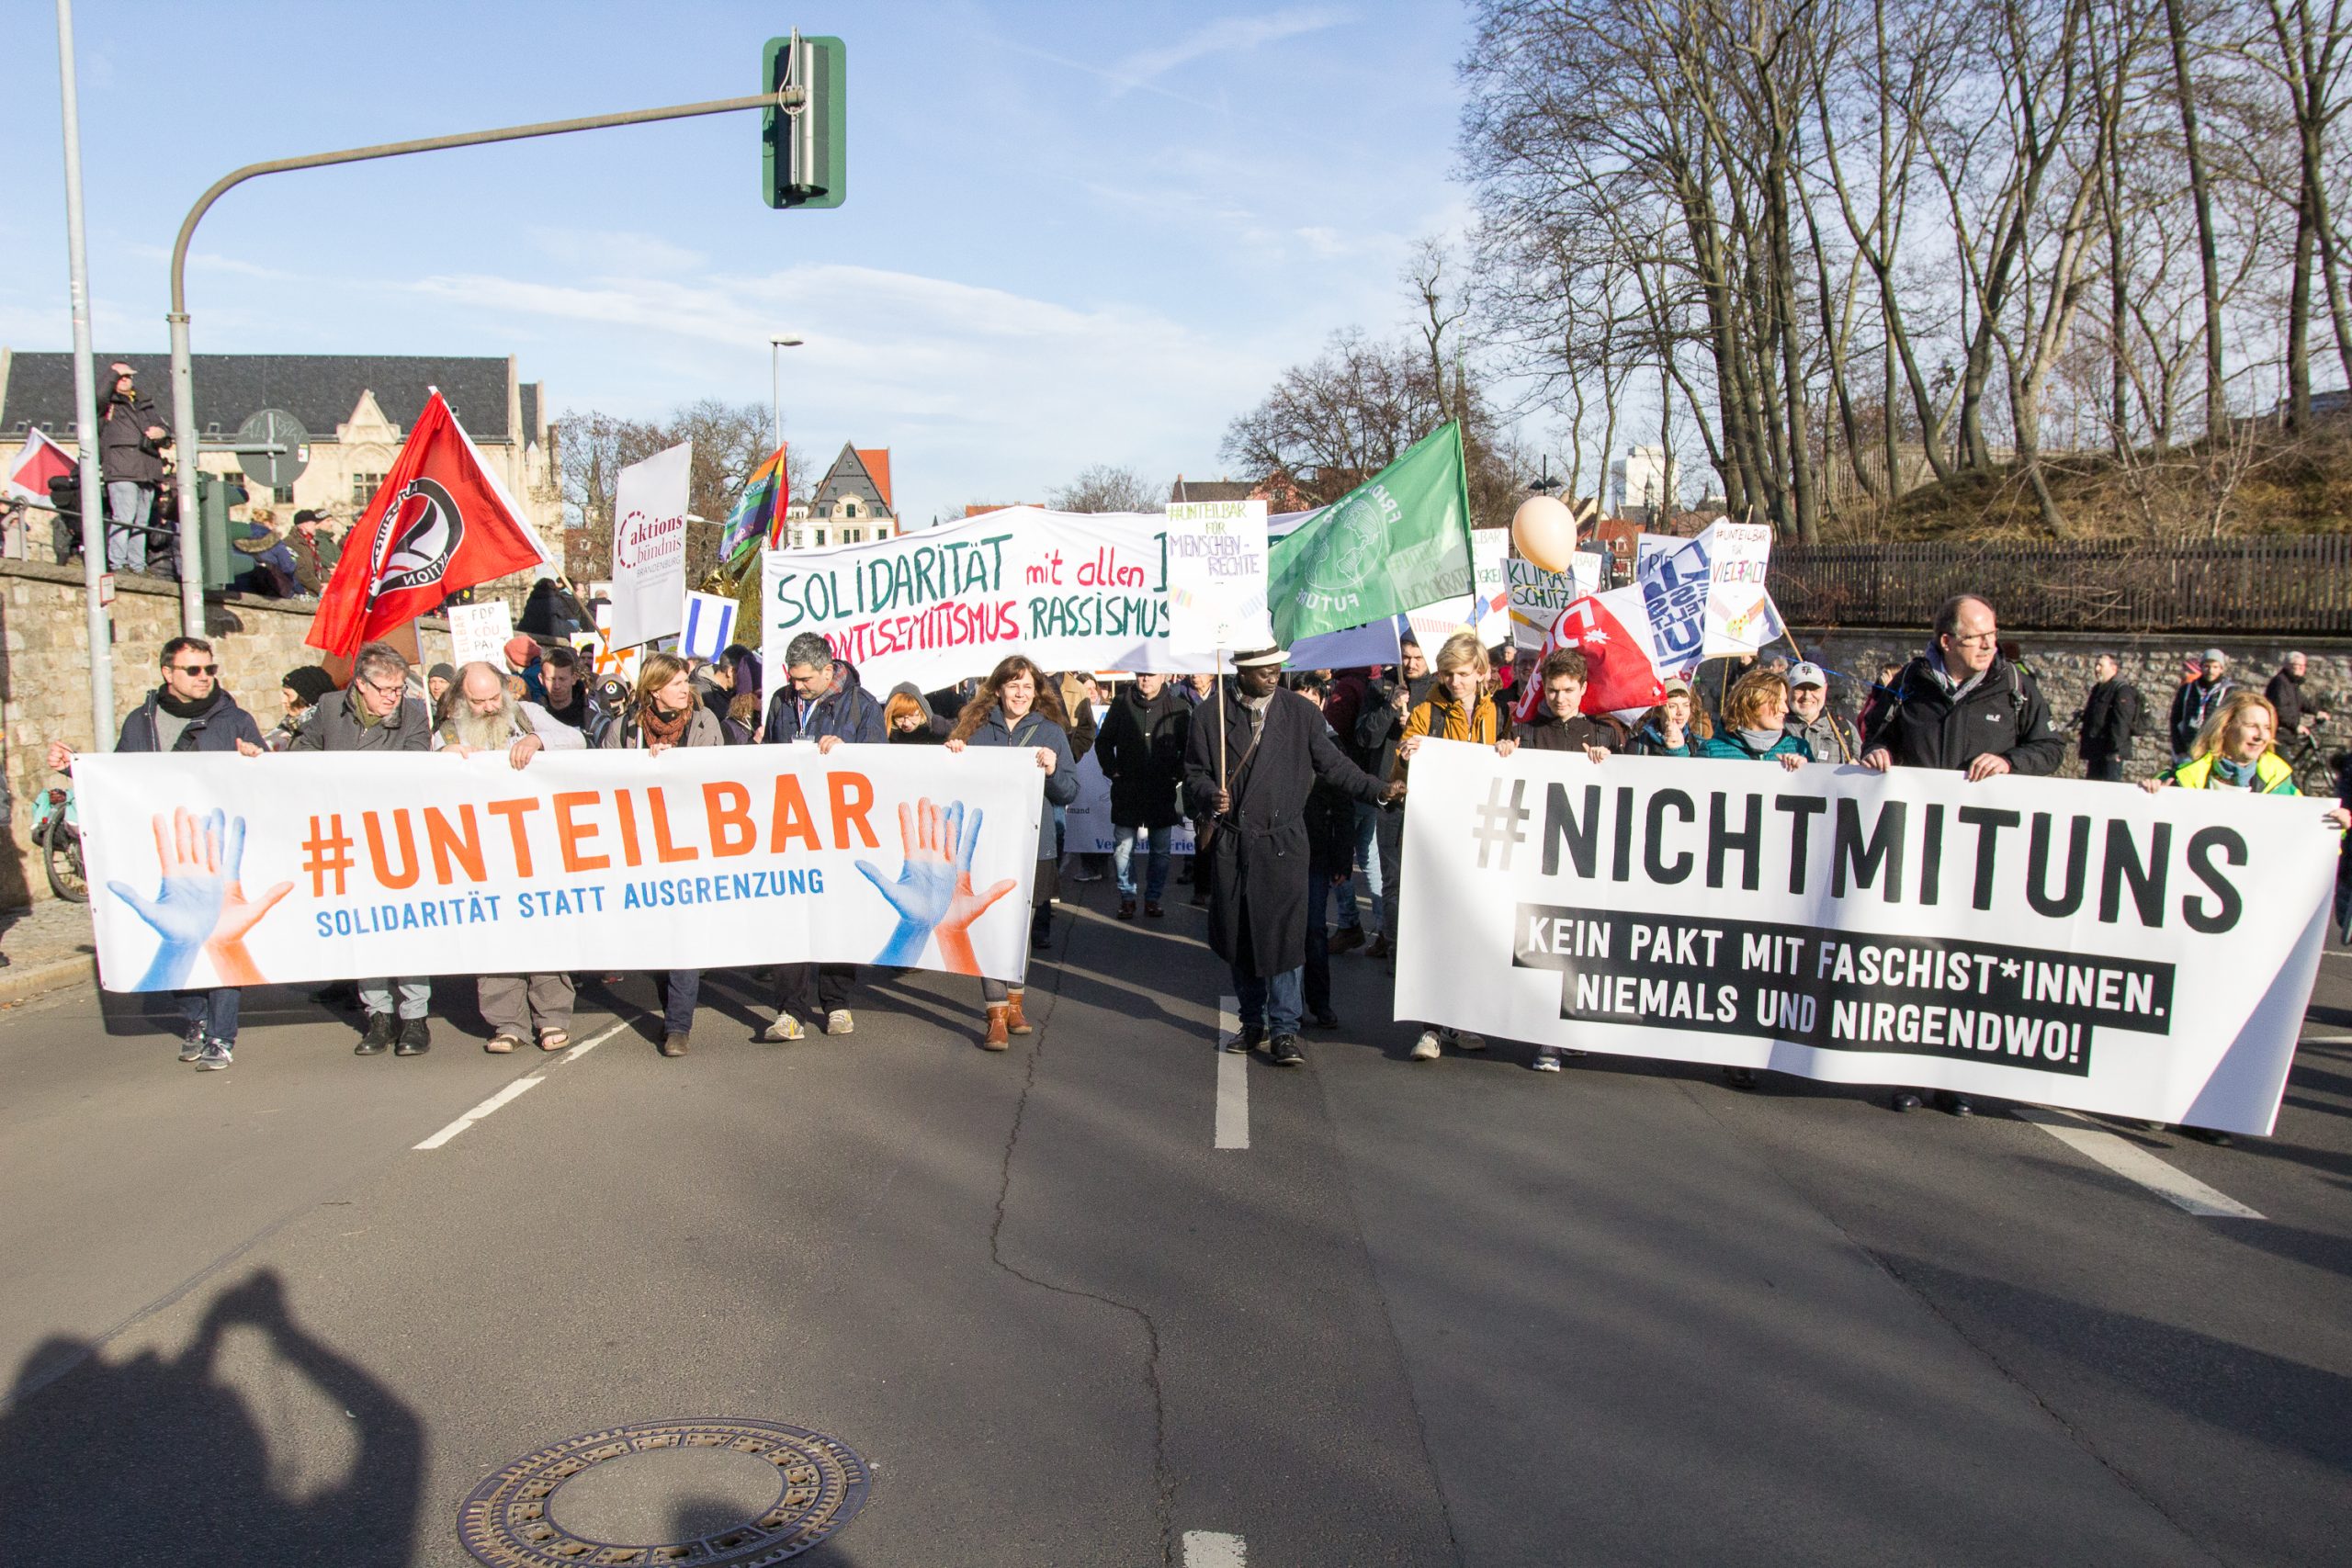 Bild einer Demonstration gegen Ausgrenzung und Faschismus